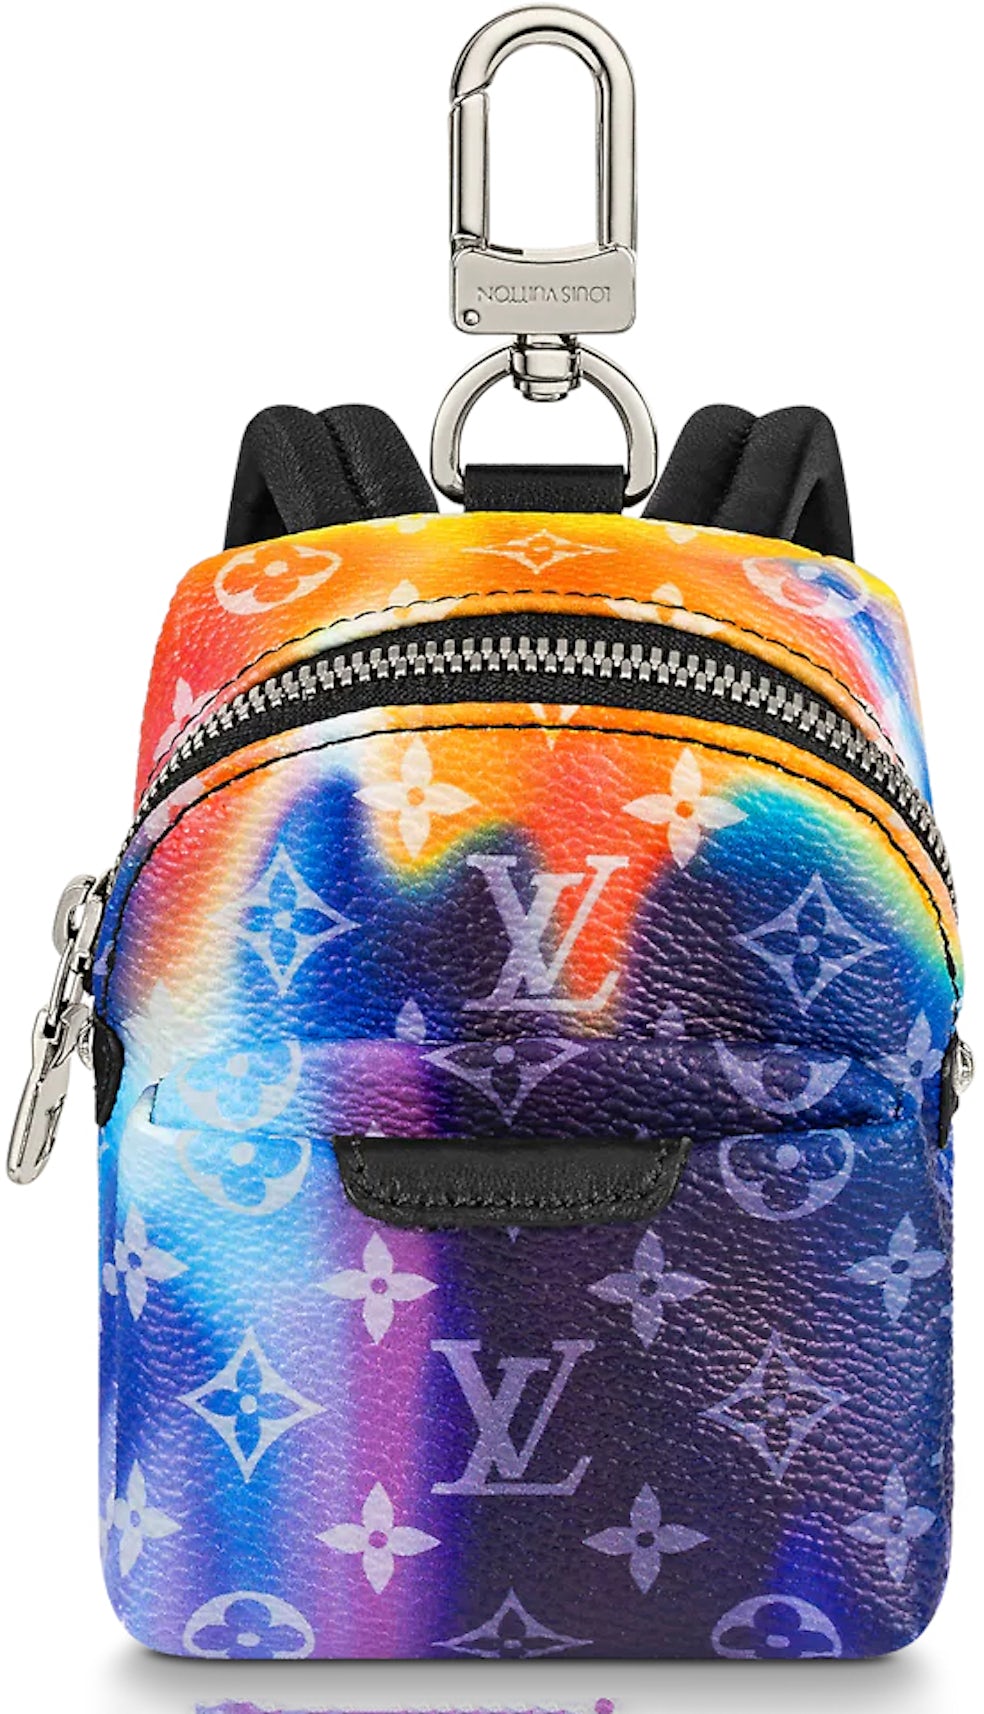 Louis Vuitton, Accessories, Louis Vuitton Fleur De Monogram Dore Bag Charm